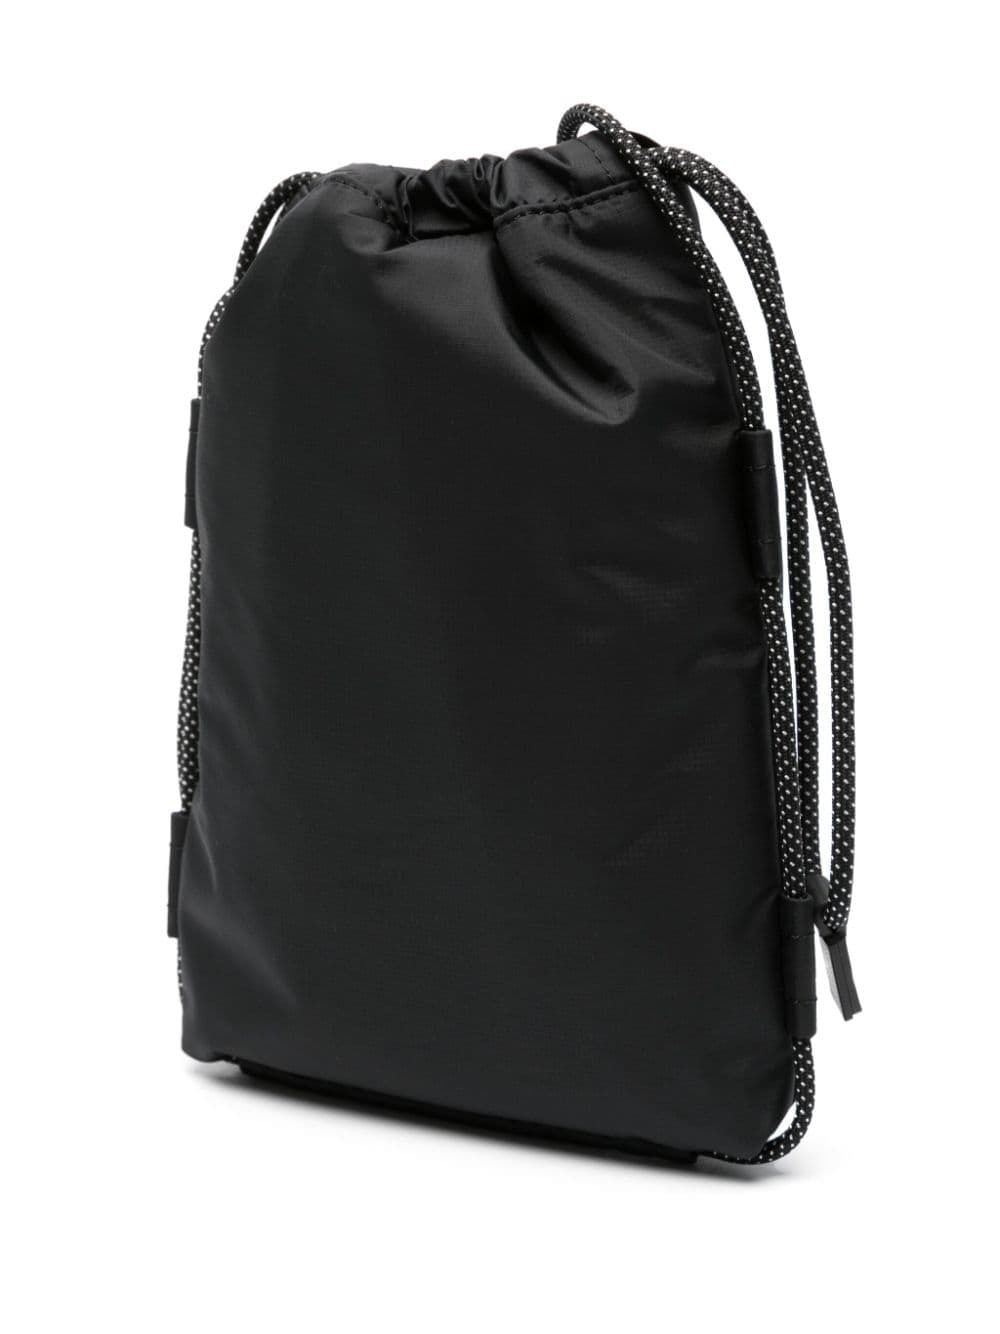 Túi đeo chéo dây đen bằng nylon cho nam giới - Bộ sưu tập SS24